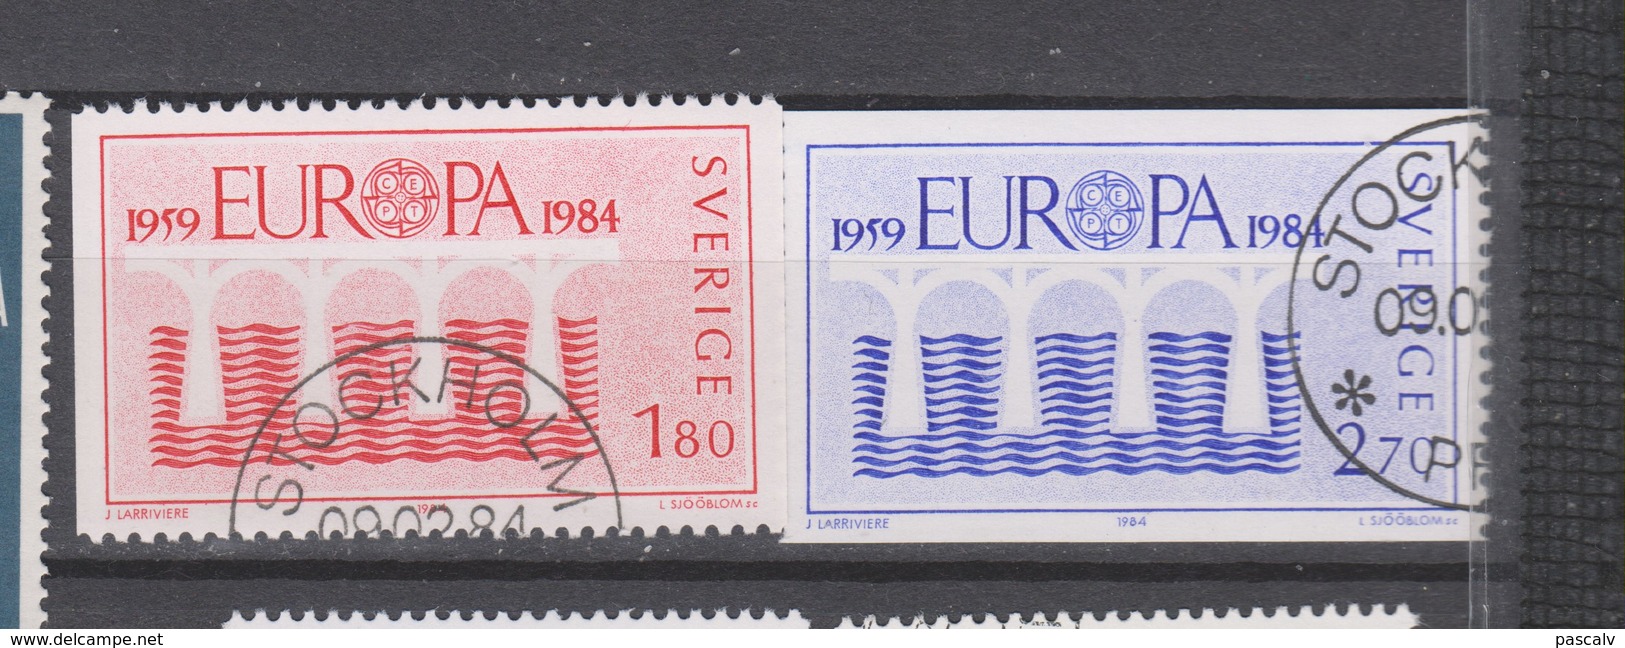 EUROPA 1984 Suède Série Complète Oblitérée - 1984